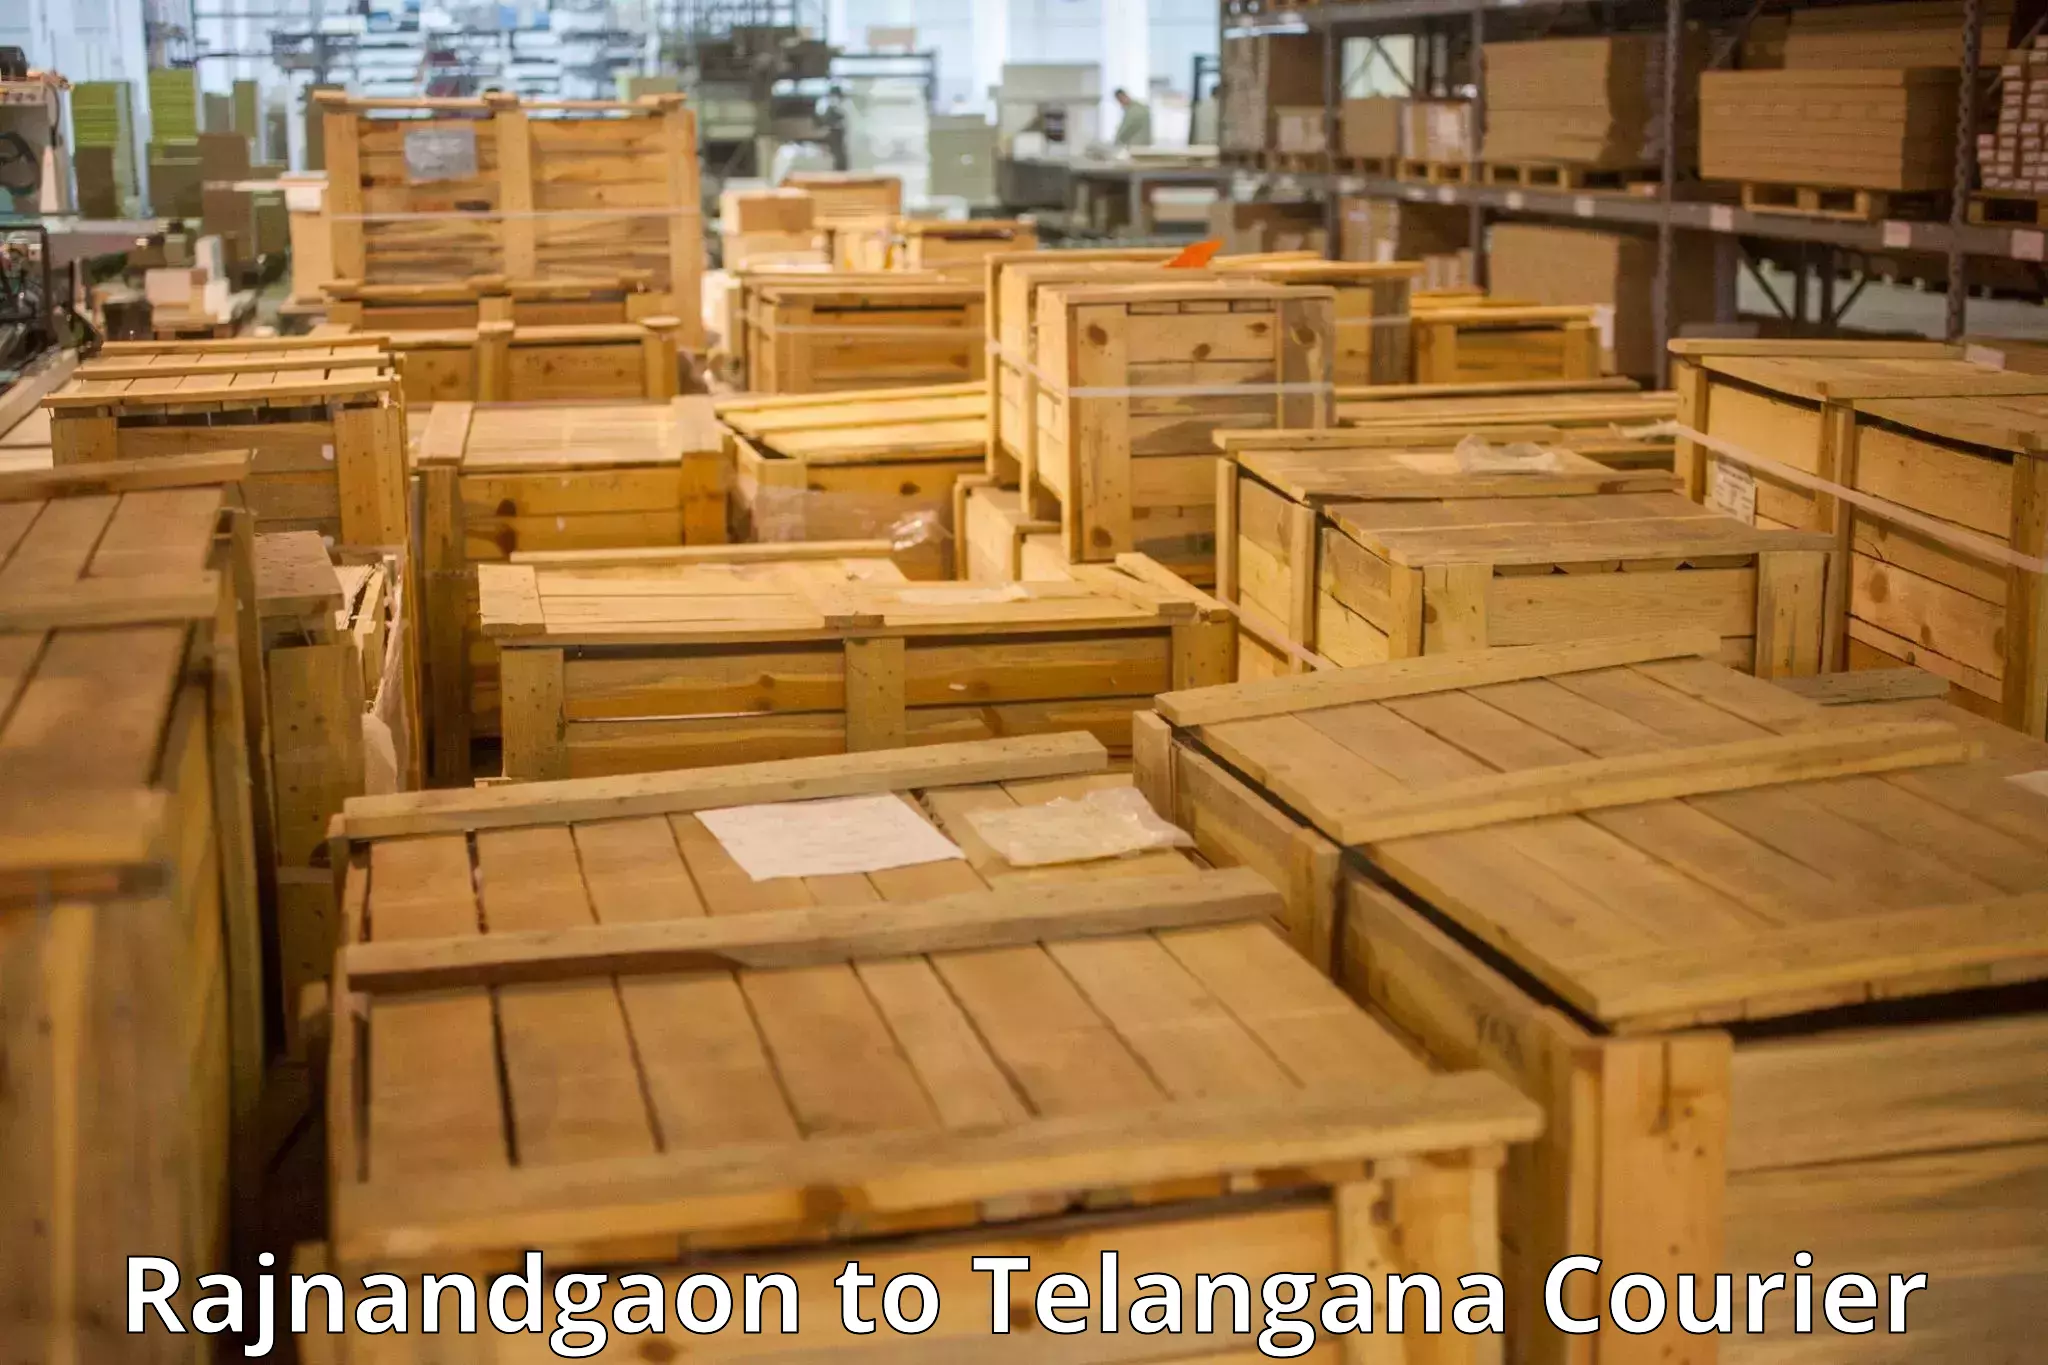 Urgent luggage shipment Rajnandgaon to Hyderabad